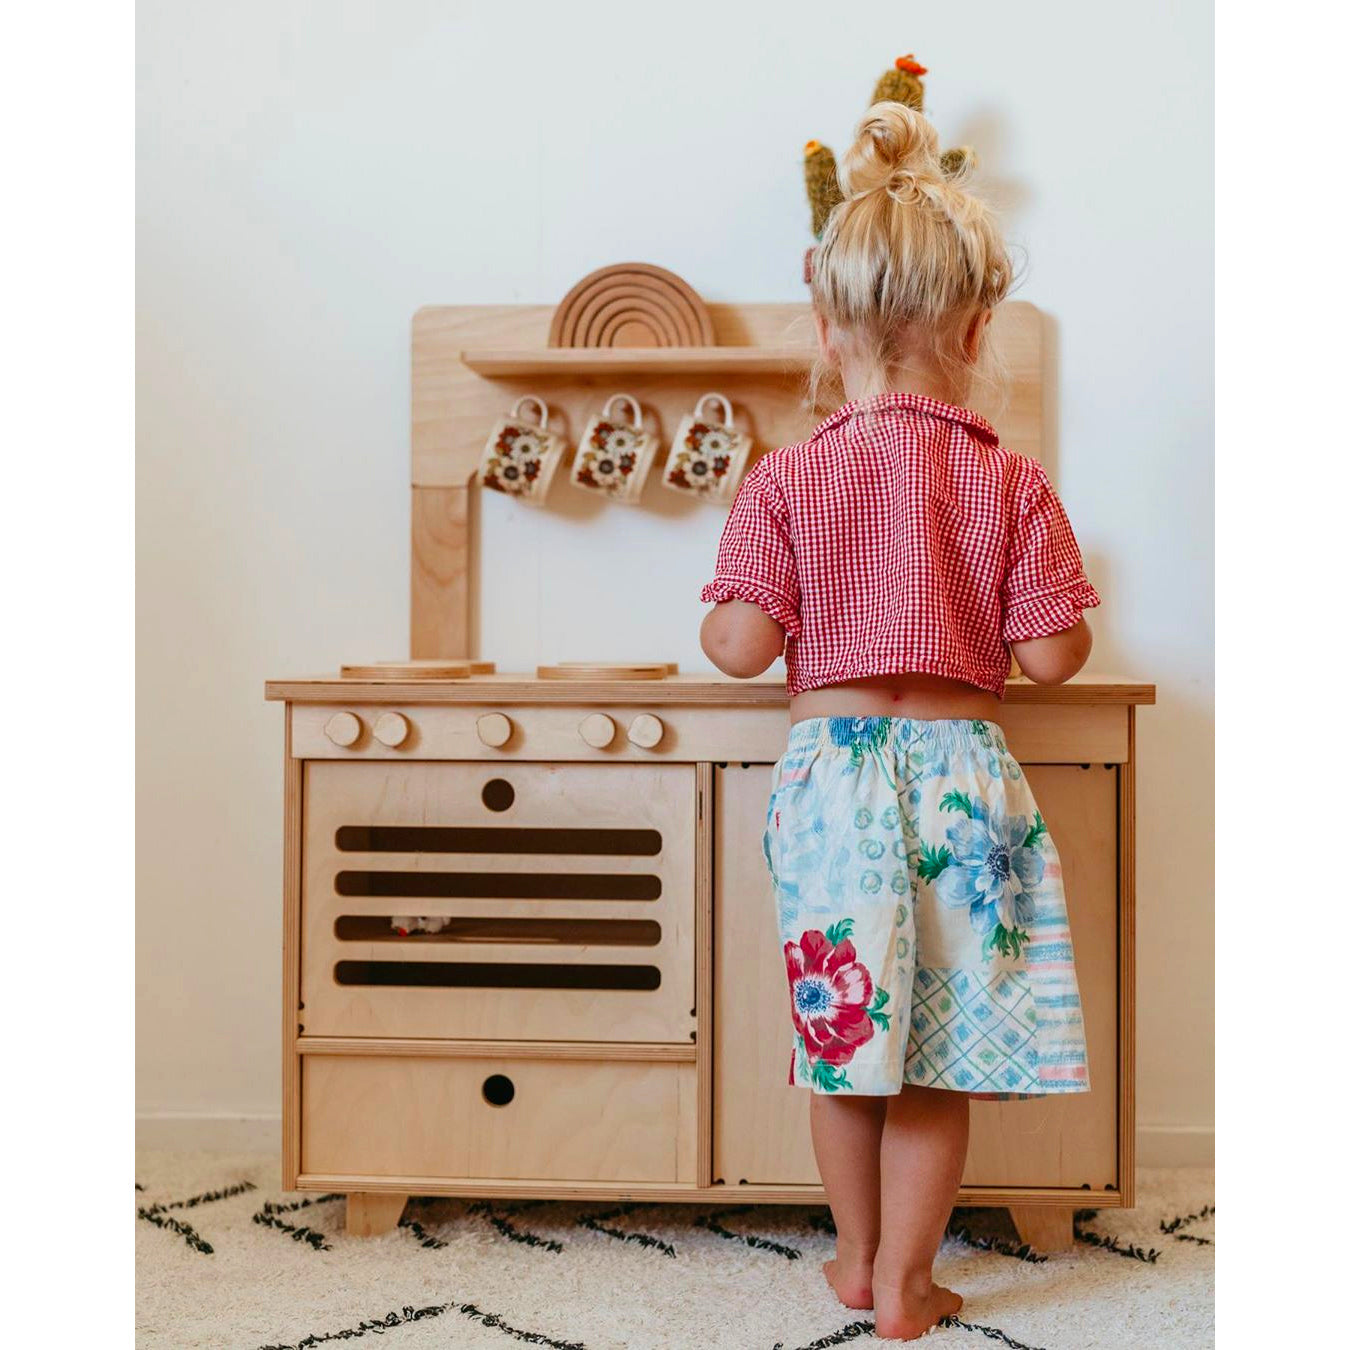 Midmini Montessori Küche für Kinder - Holzspielzeug für Aktivitäten von Babys, damit sie ihre Kreativität ausleben können